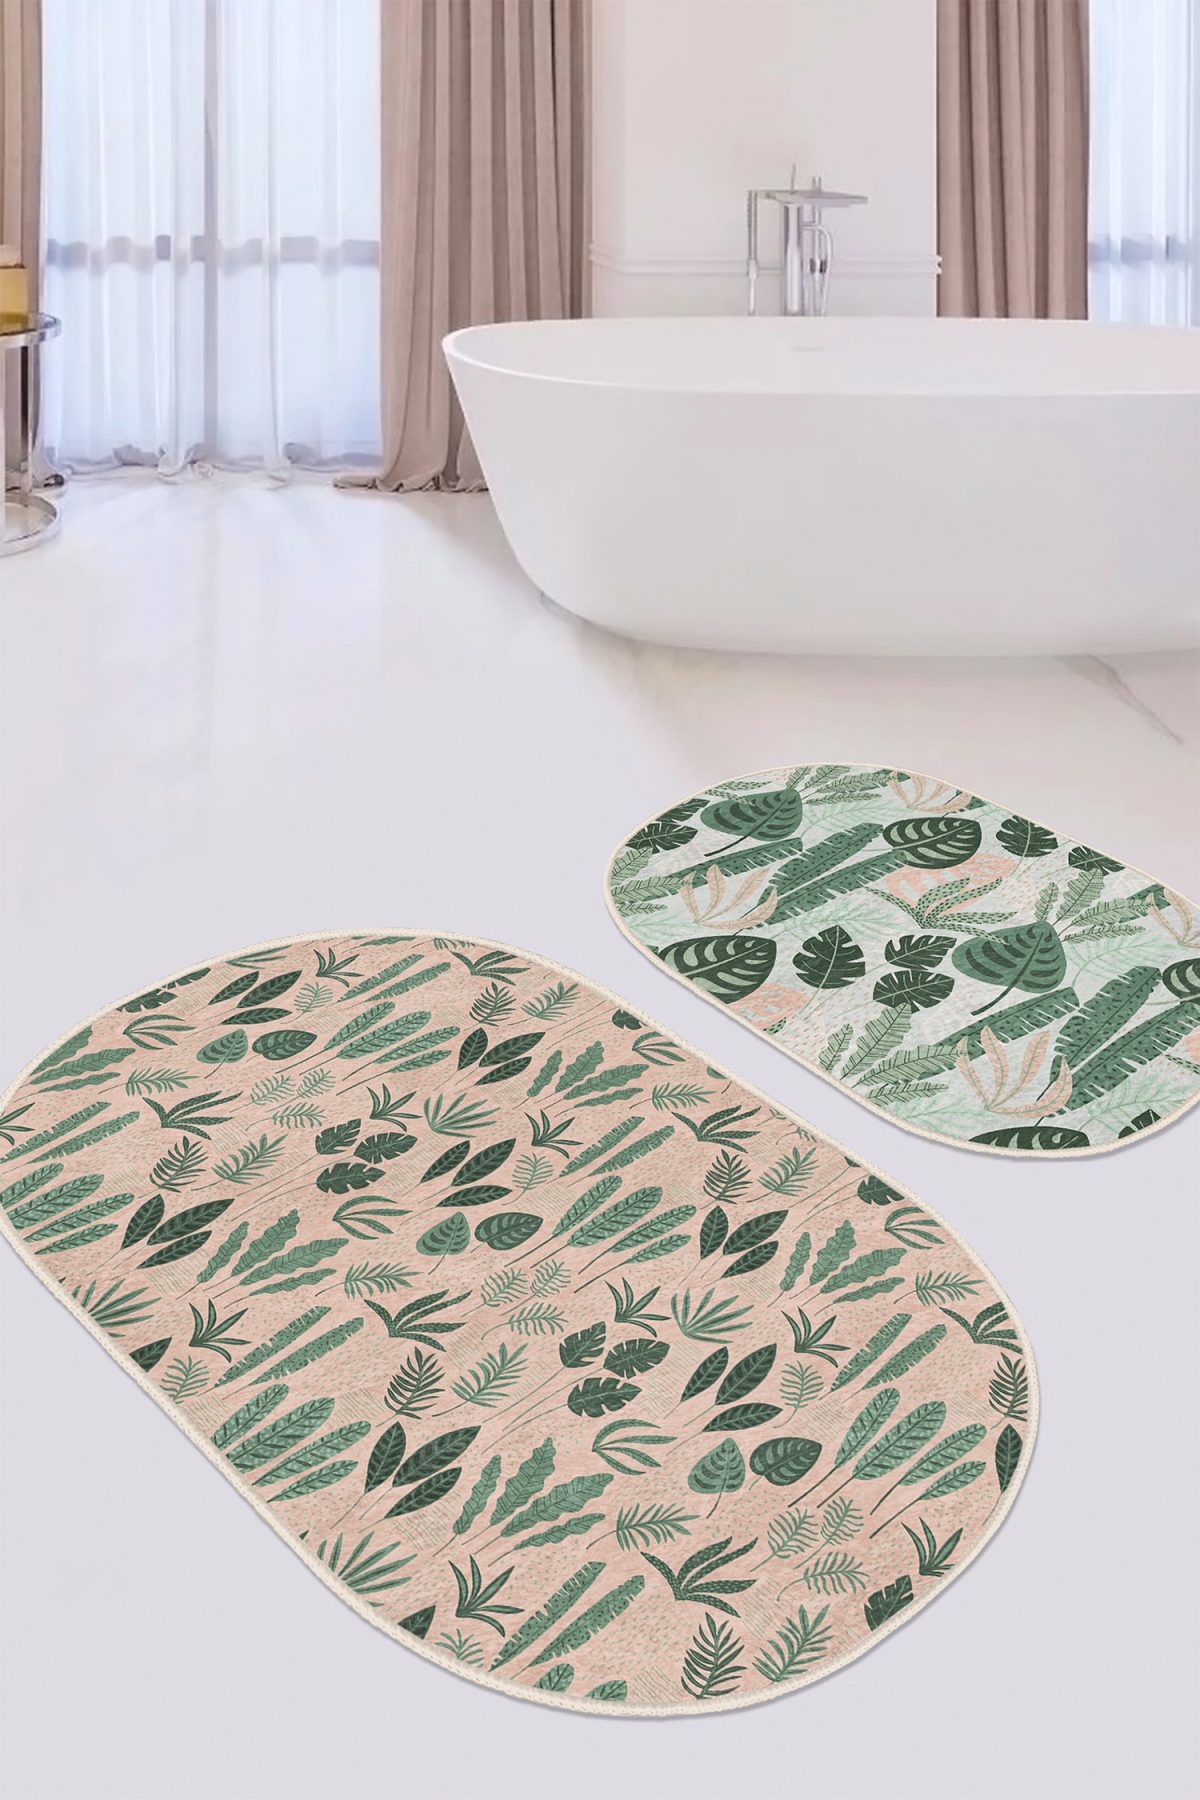 Soft Zemin Tropik Yapraklar Dijital Baskılı 2'li Oval Kaymaz Tabanlı Banyo & Mutfak Paspas Takımı Realhomes